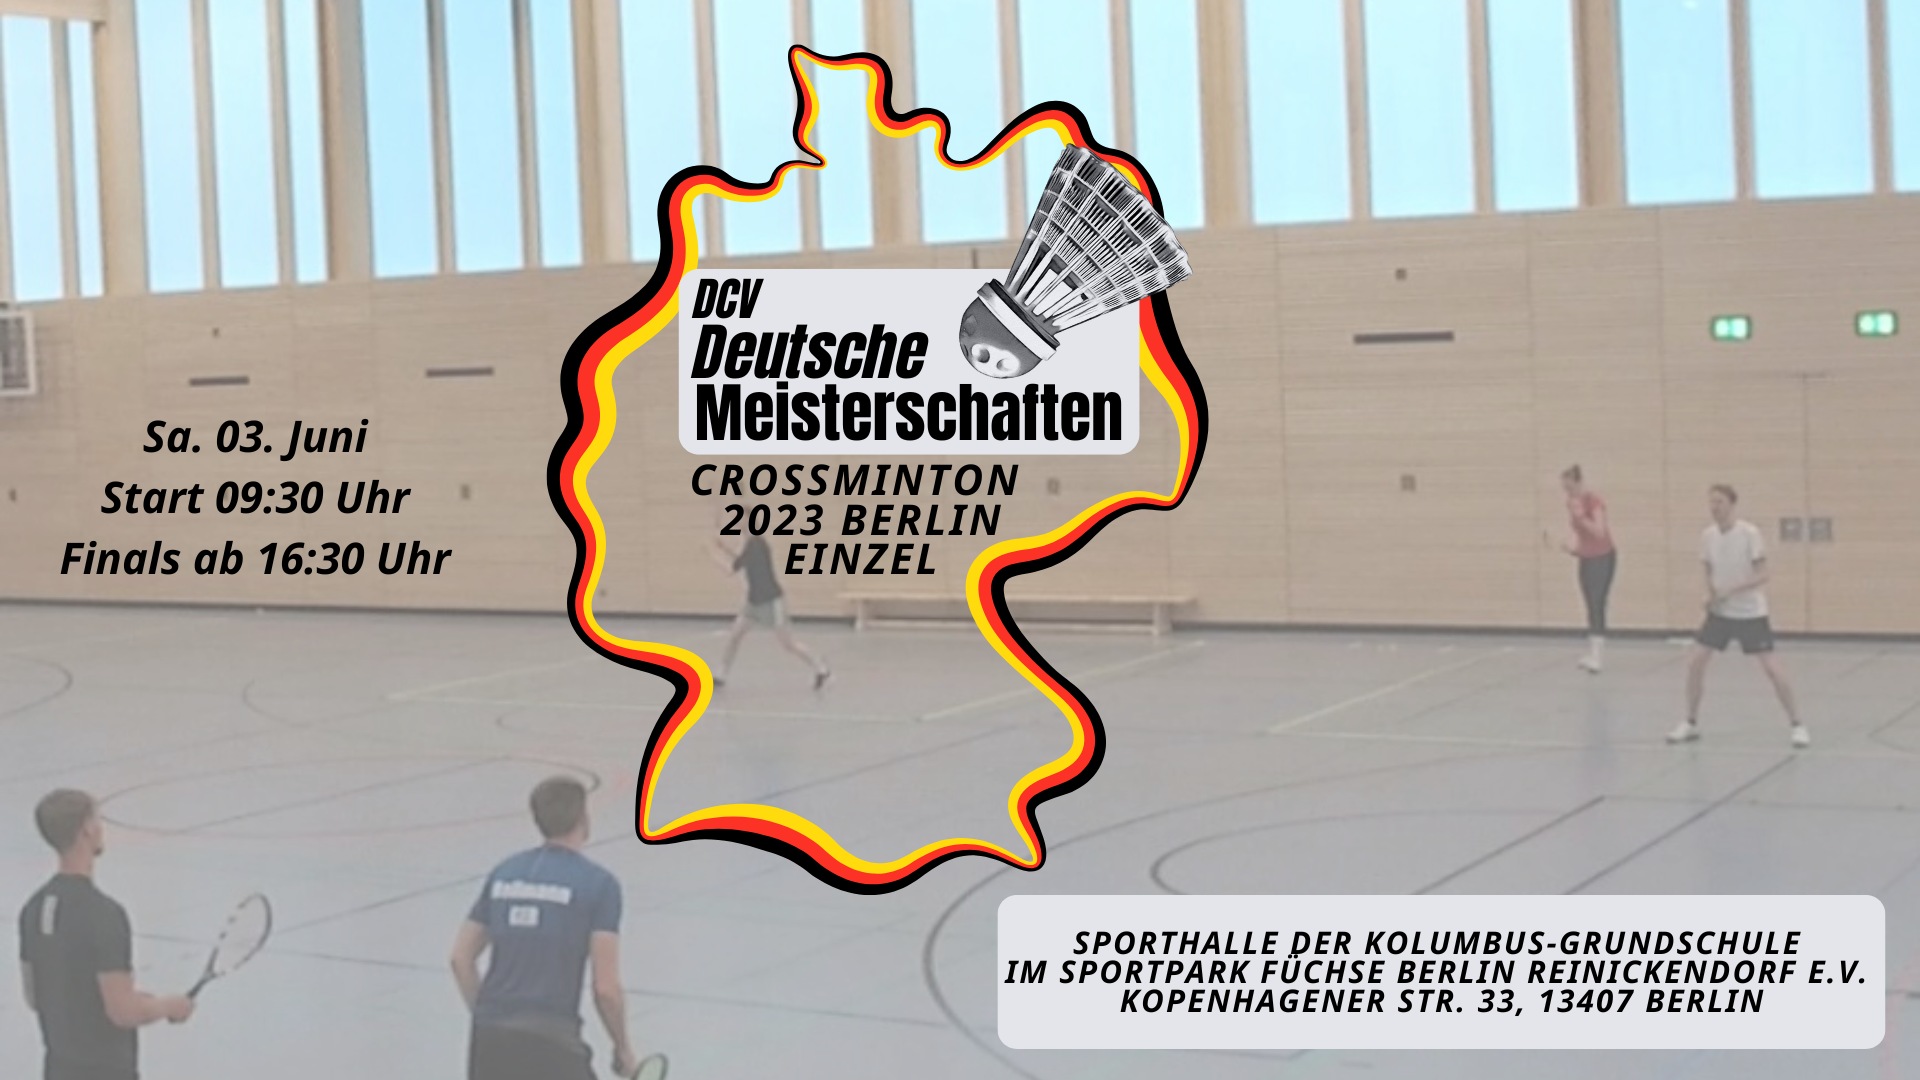 Deutsche Einzelmeisterschaften in Berlin